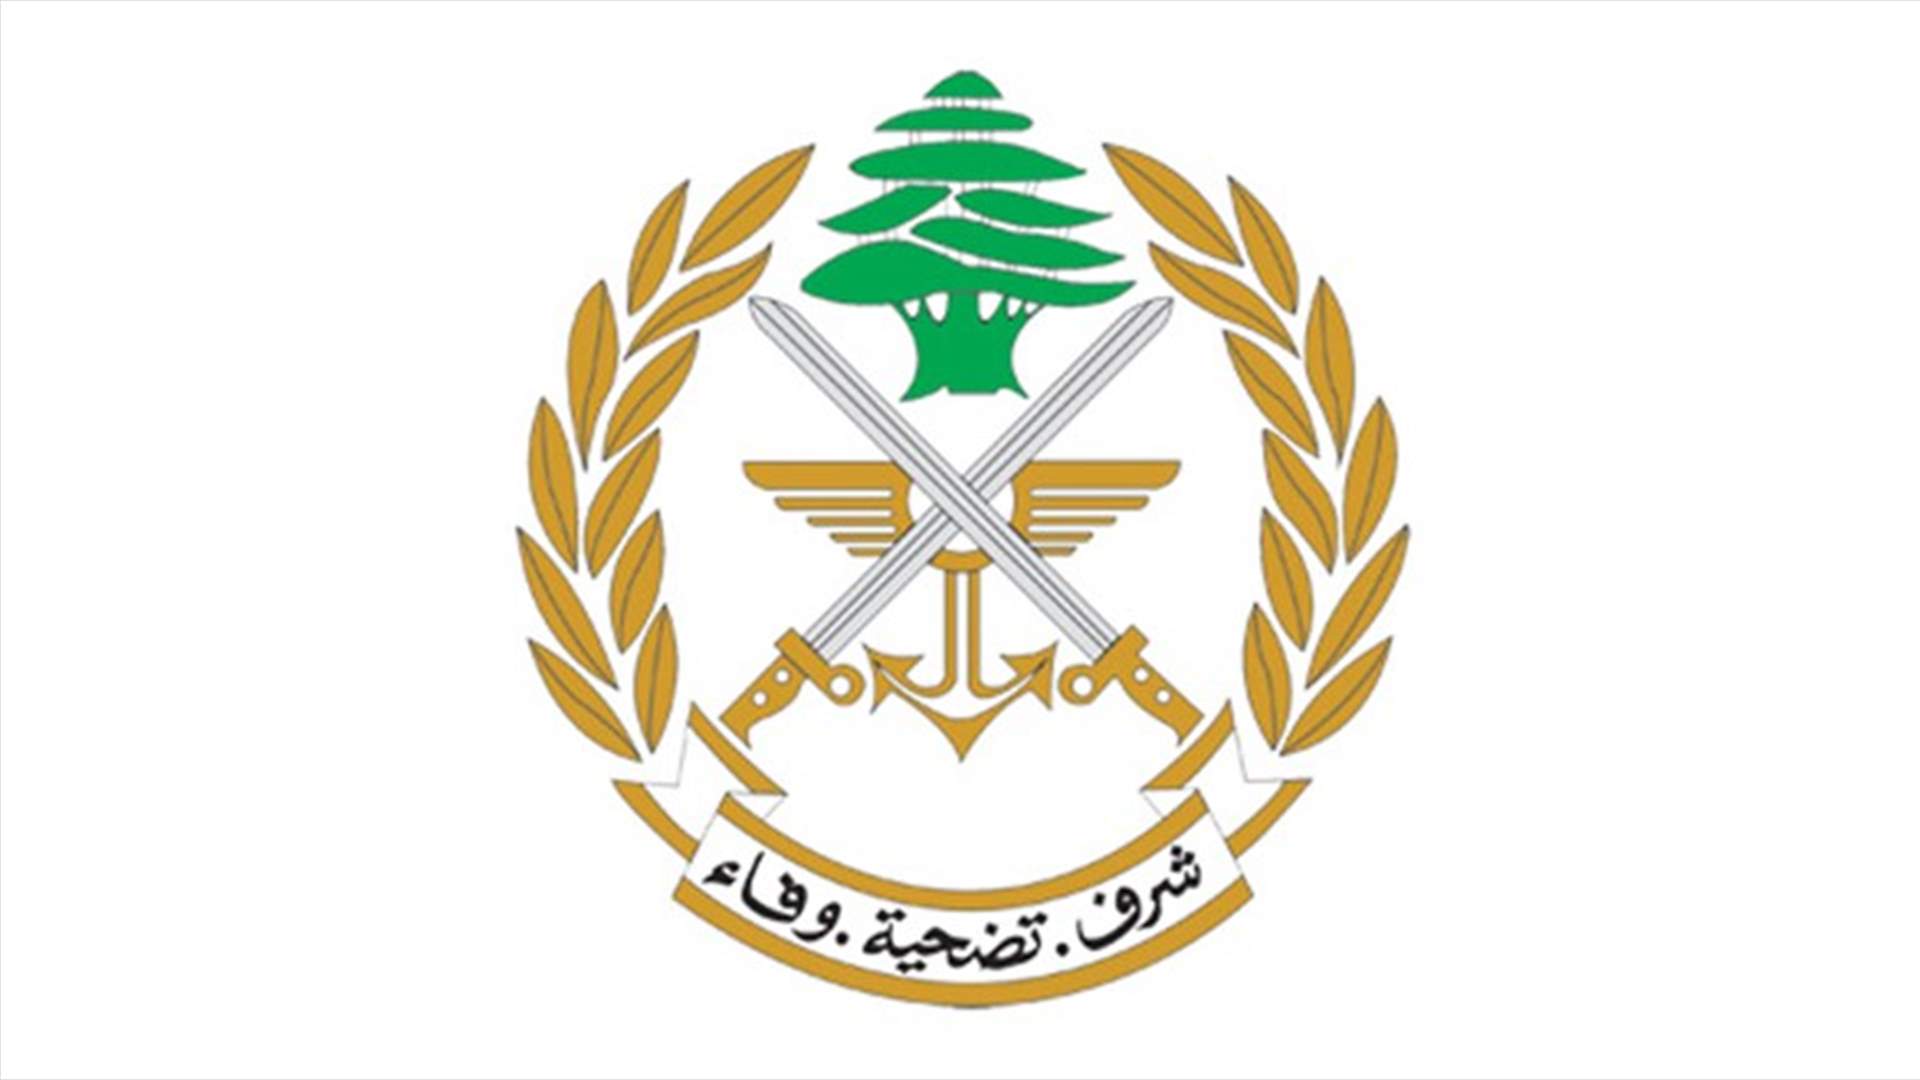 الجيش: طائرة مسيّرة تابعة للعدو الإسرائيلي خرقت الأجواء اللبنانية